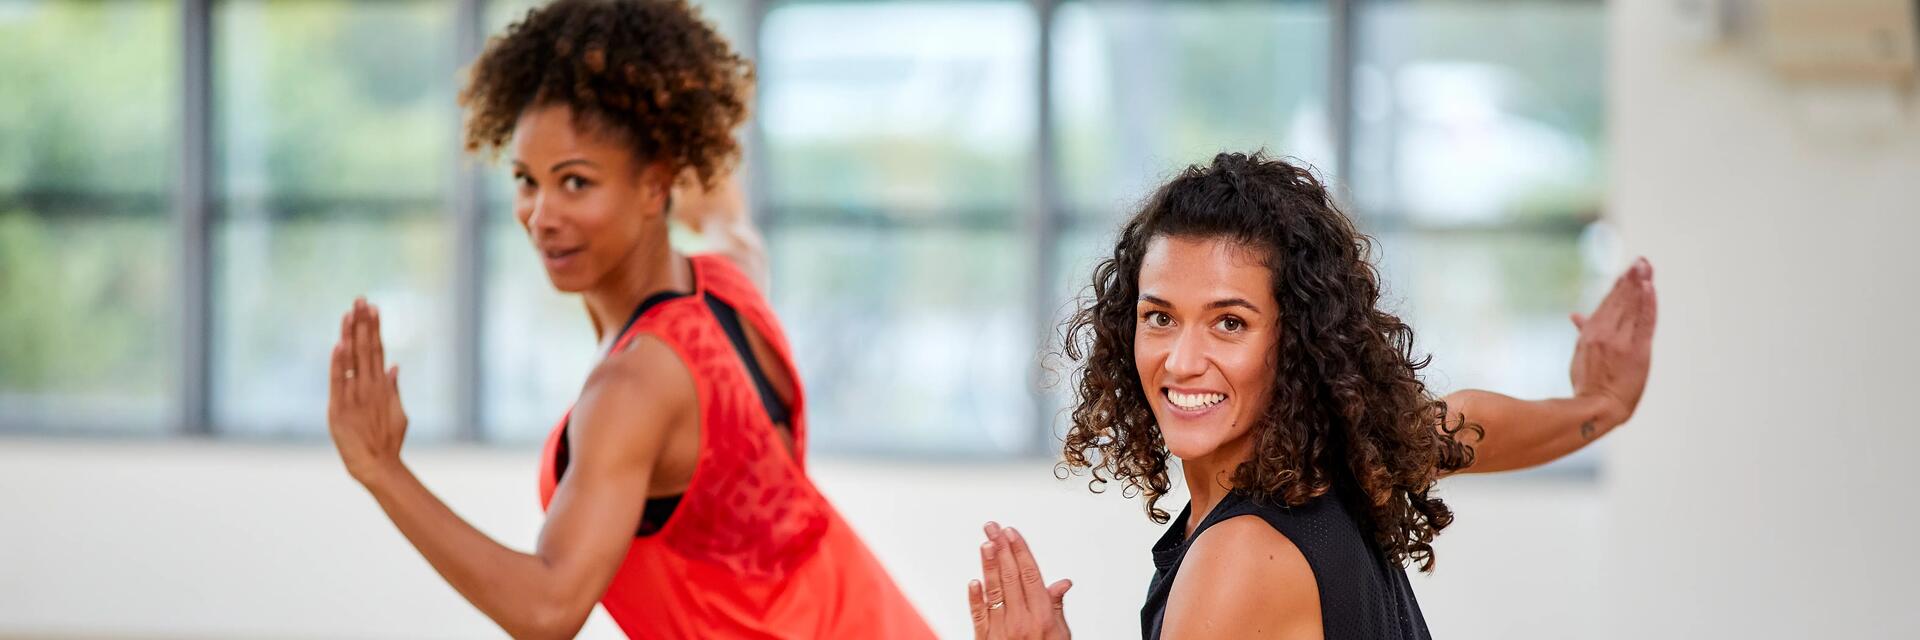 Uśmiechnięte kobiety w odzieży sportowej pokazujące co to jest zumba na sali treningowej